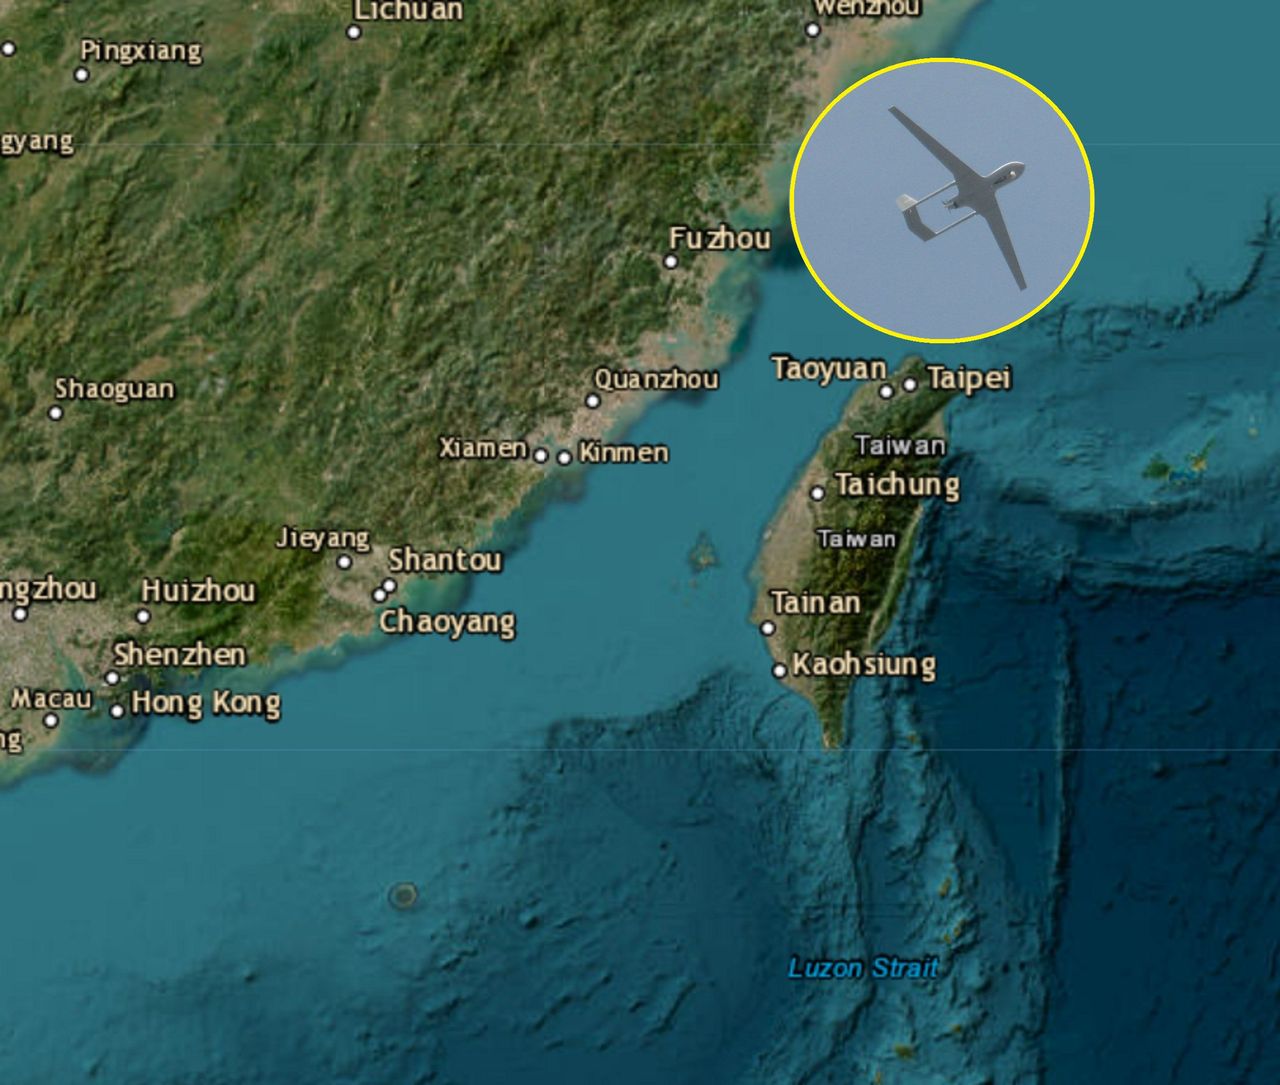 Chińskie myśliwce nad Tajwanem. Natychmiastowa odpowiedź Tajpej